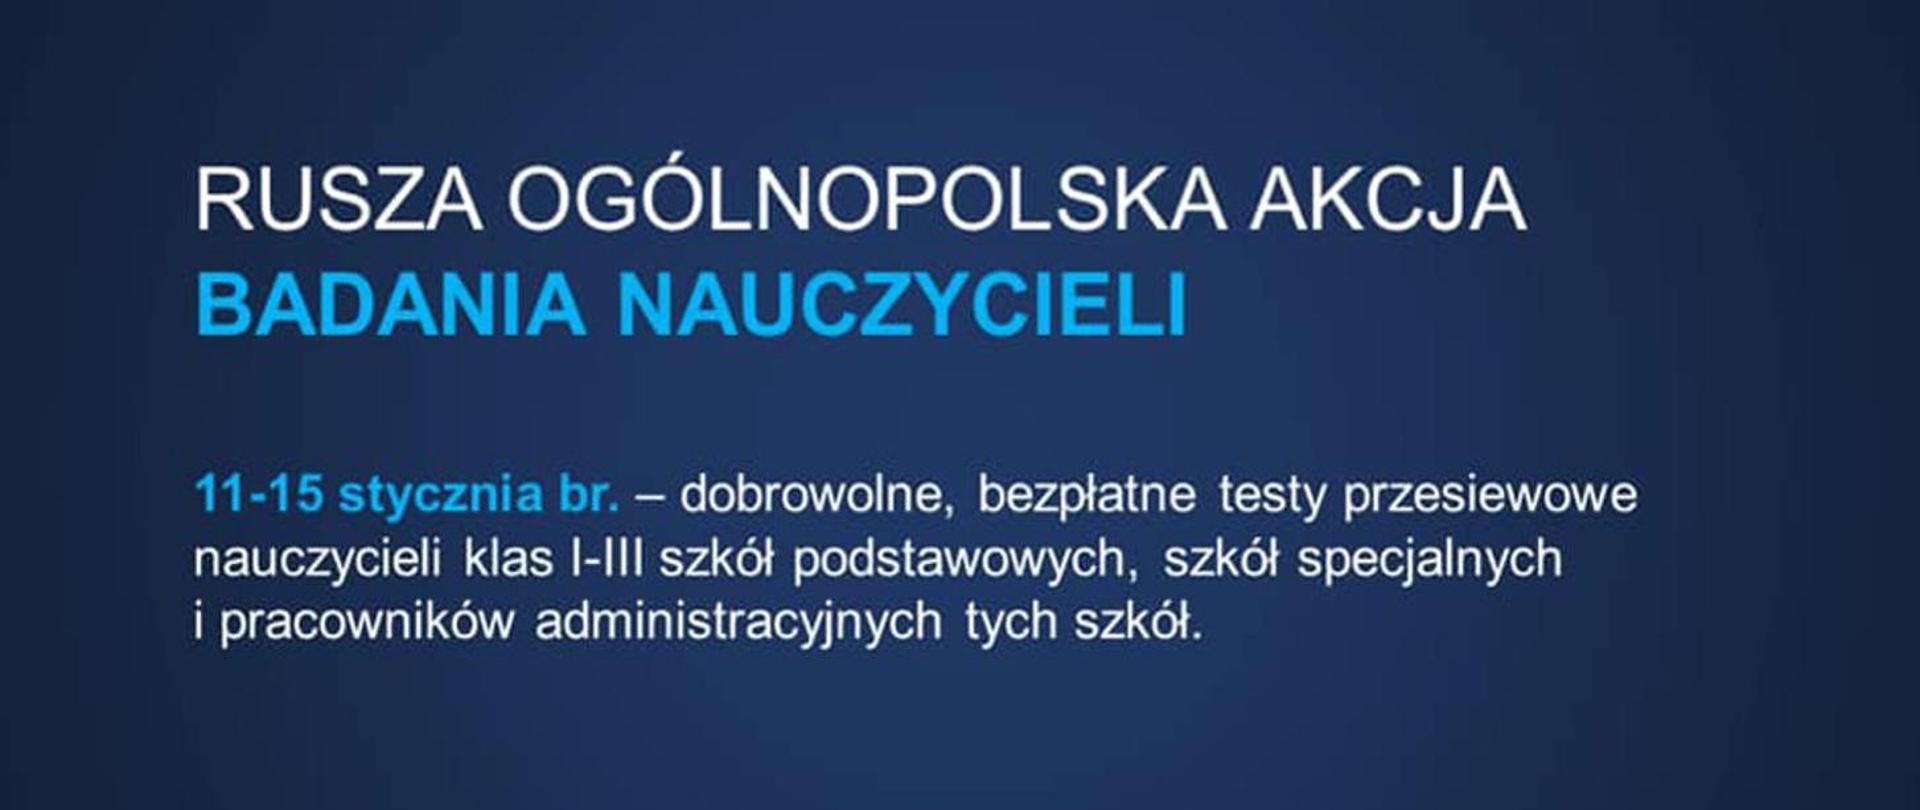 Baner z napisem: Ogólnopolska akcja badania nauczycieli 11-15 stycznia bieżącego roku.